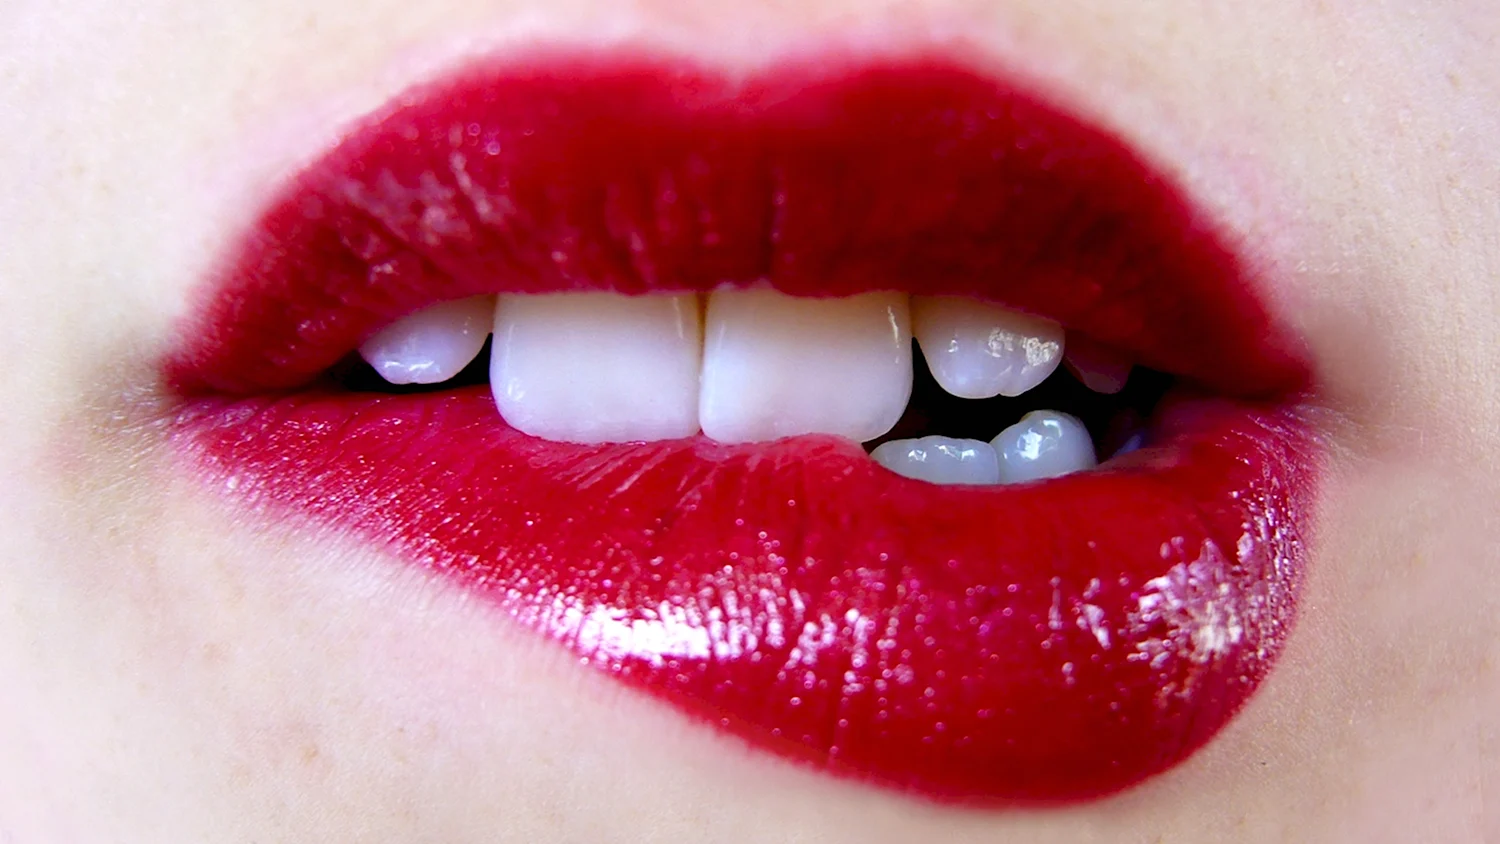 Красивые женские губы